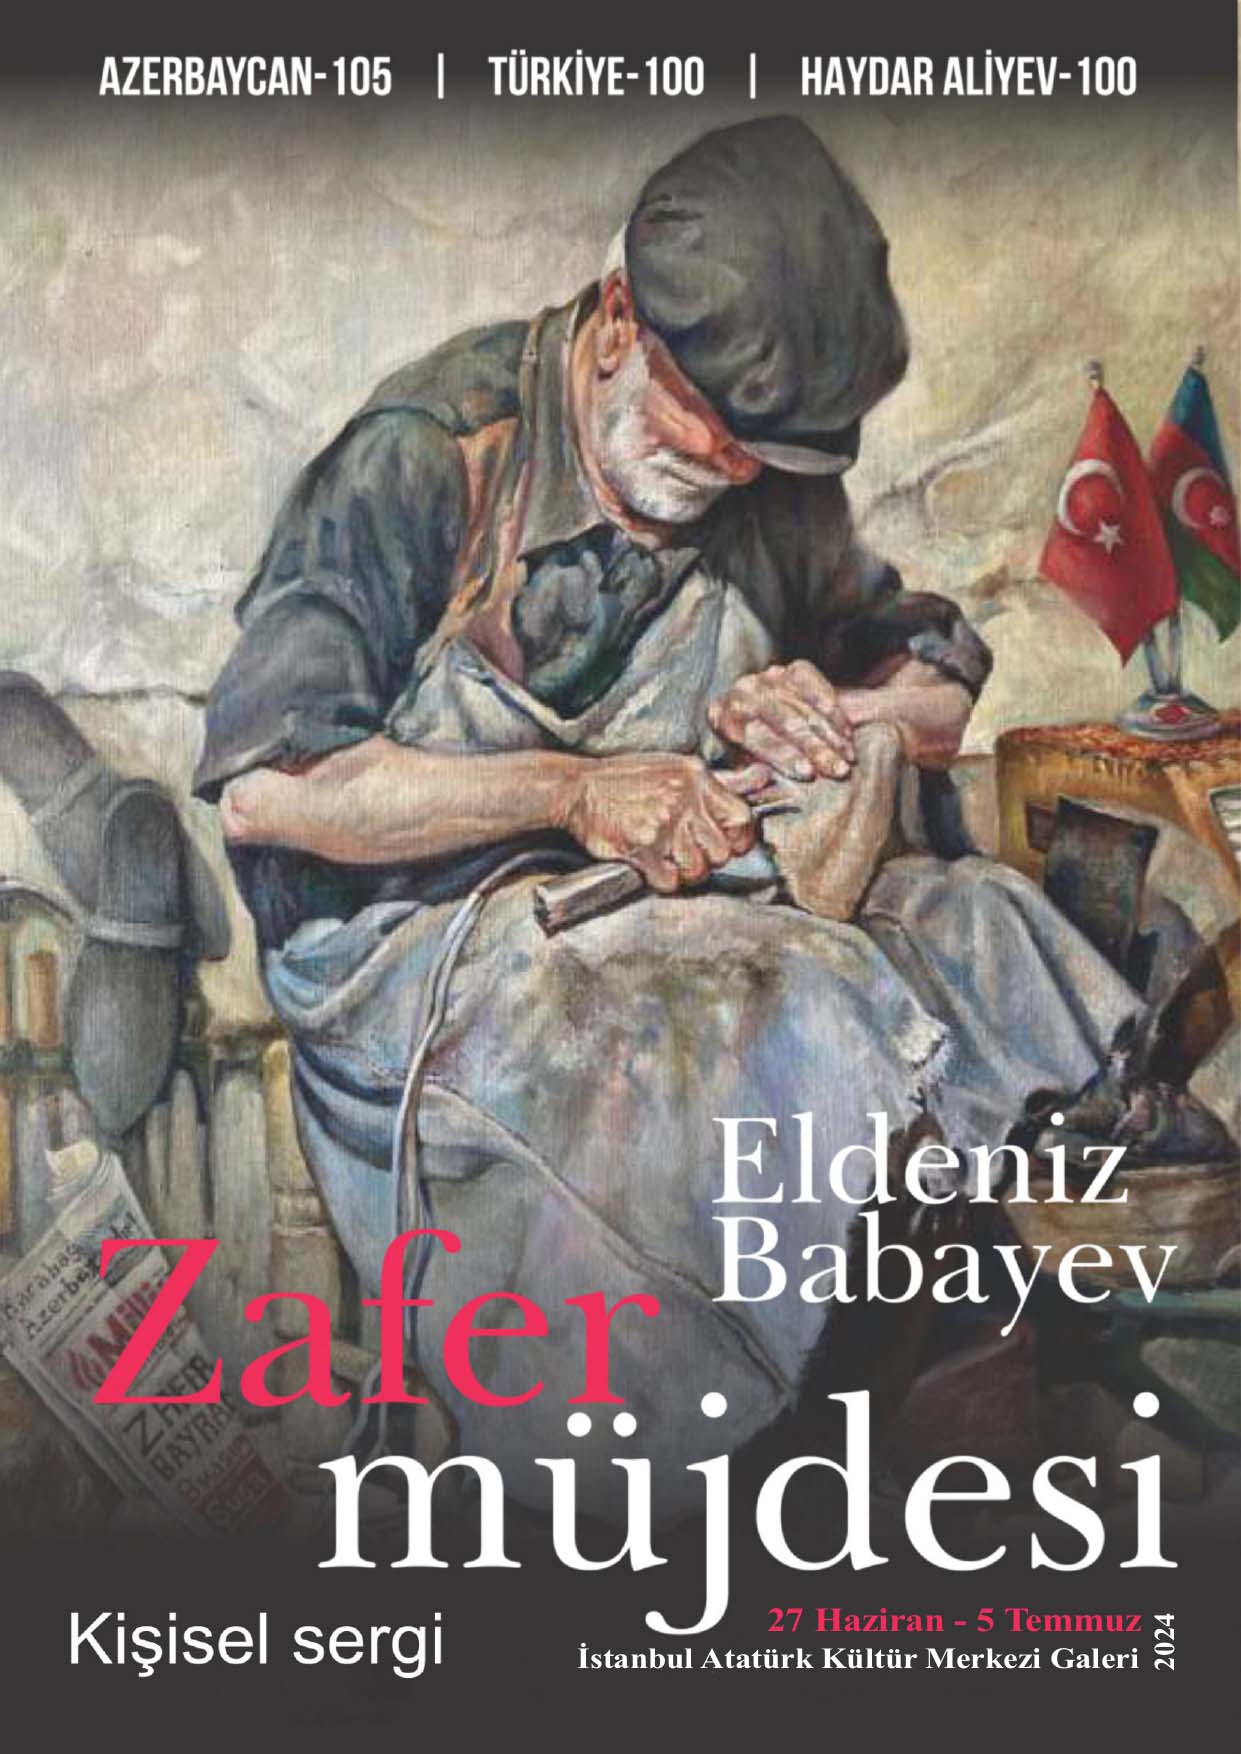 Eldəniz Babayevin "Zəfər Müjdəsi" fərdi sərgisi açılacaq.